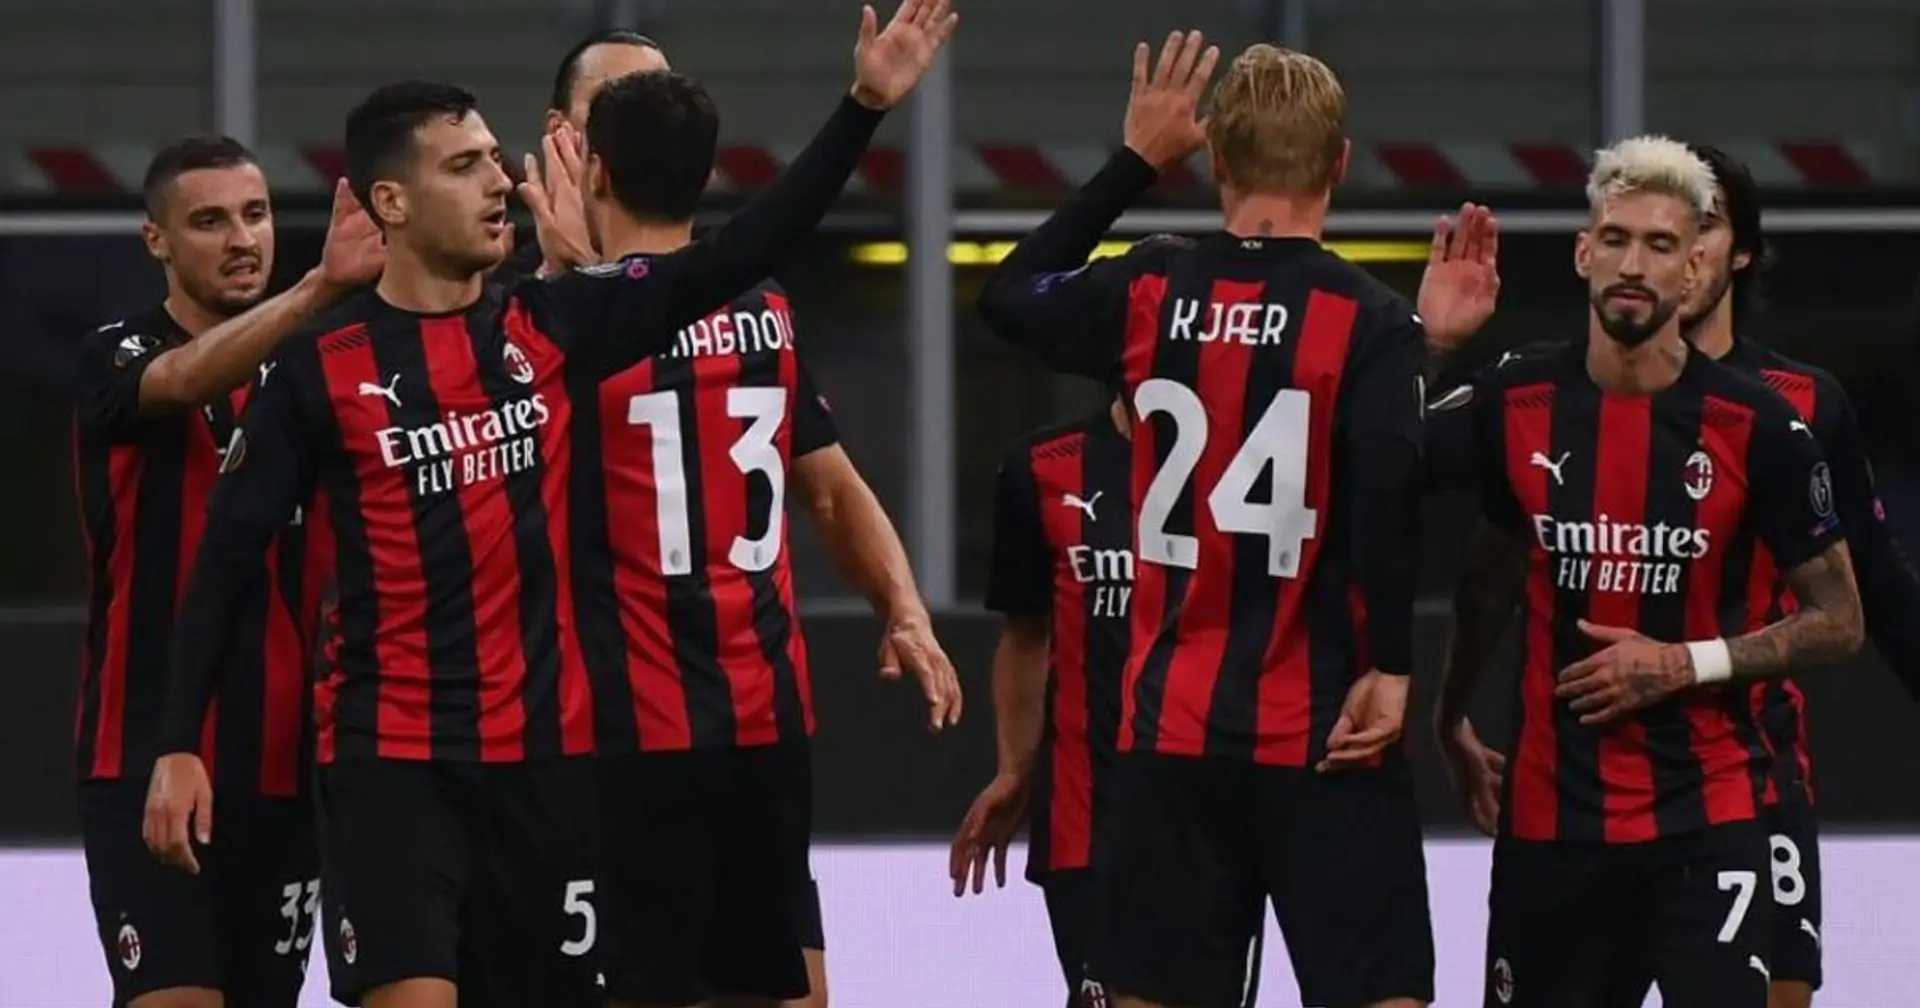 Milan vince e convince con una grande prestazione di squadra: il match riassunto in 5 punti chiave